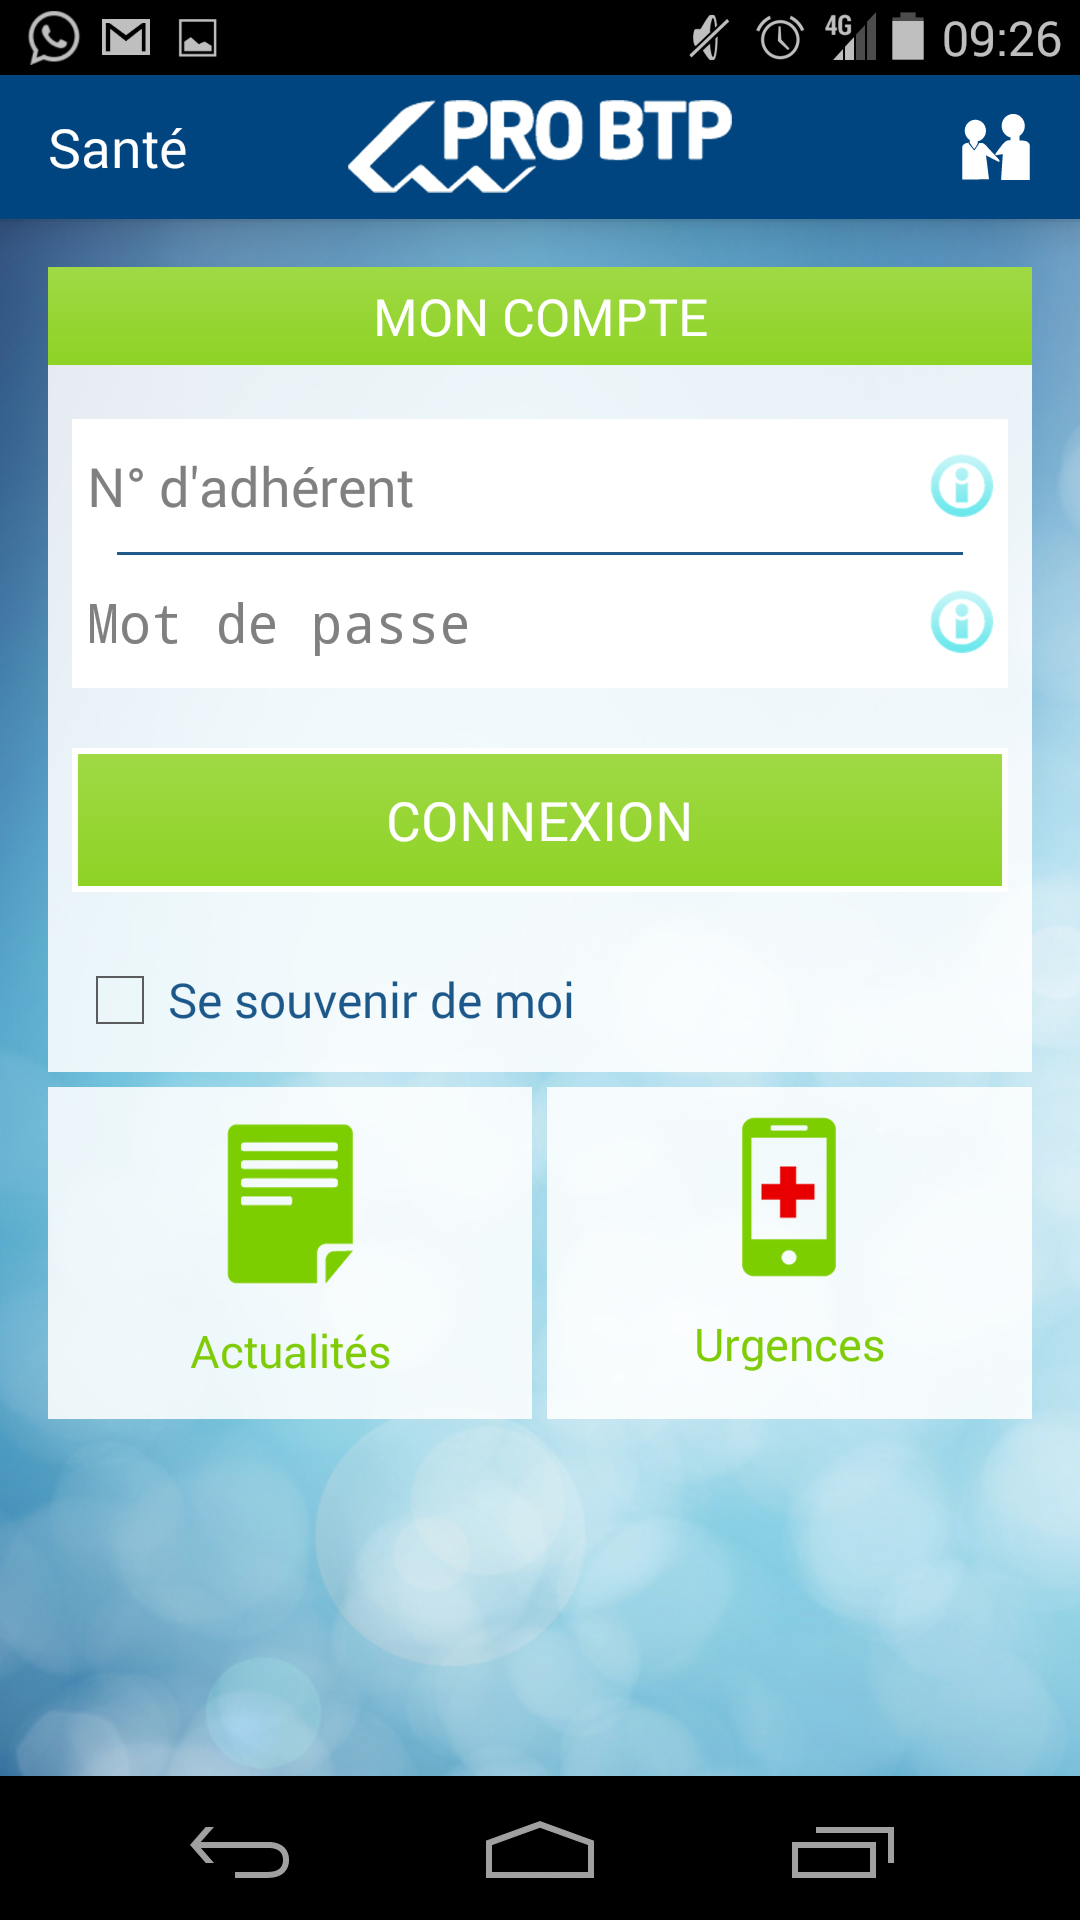 Android application PRO BTP Santé screenshort